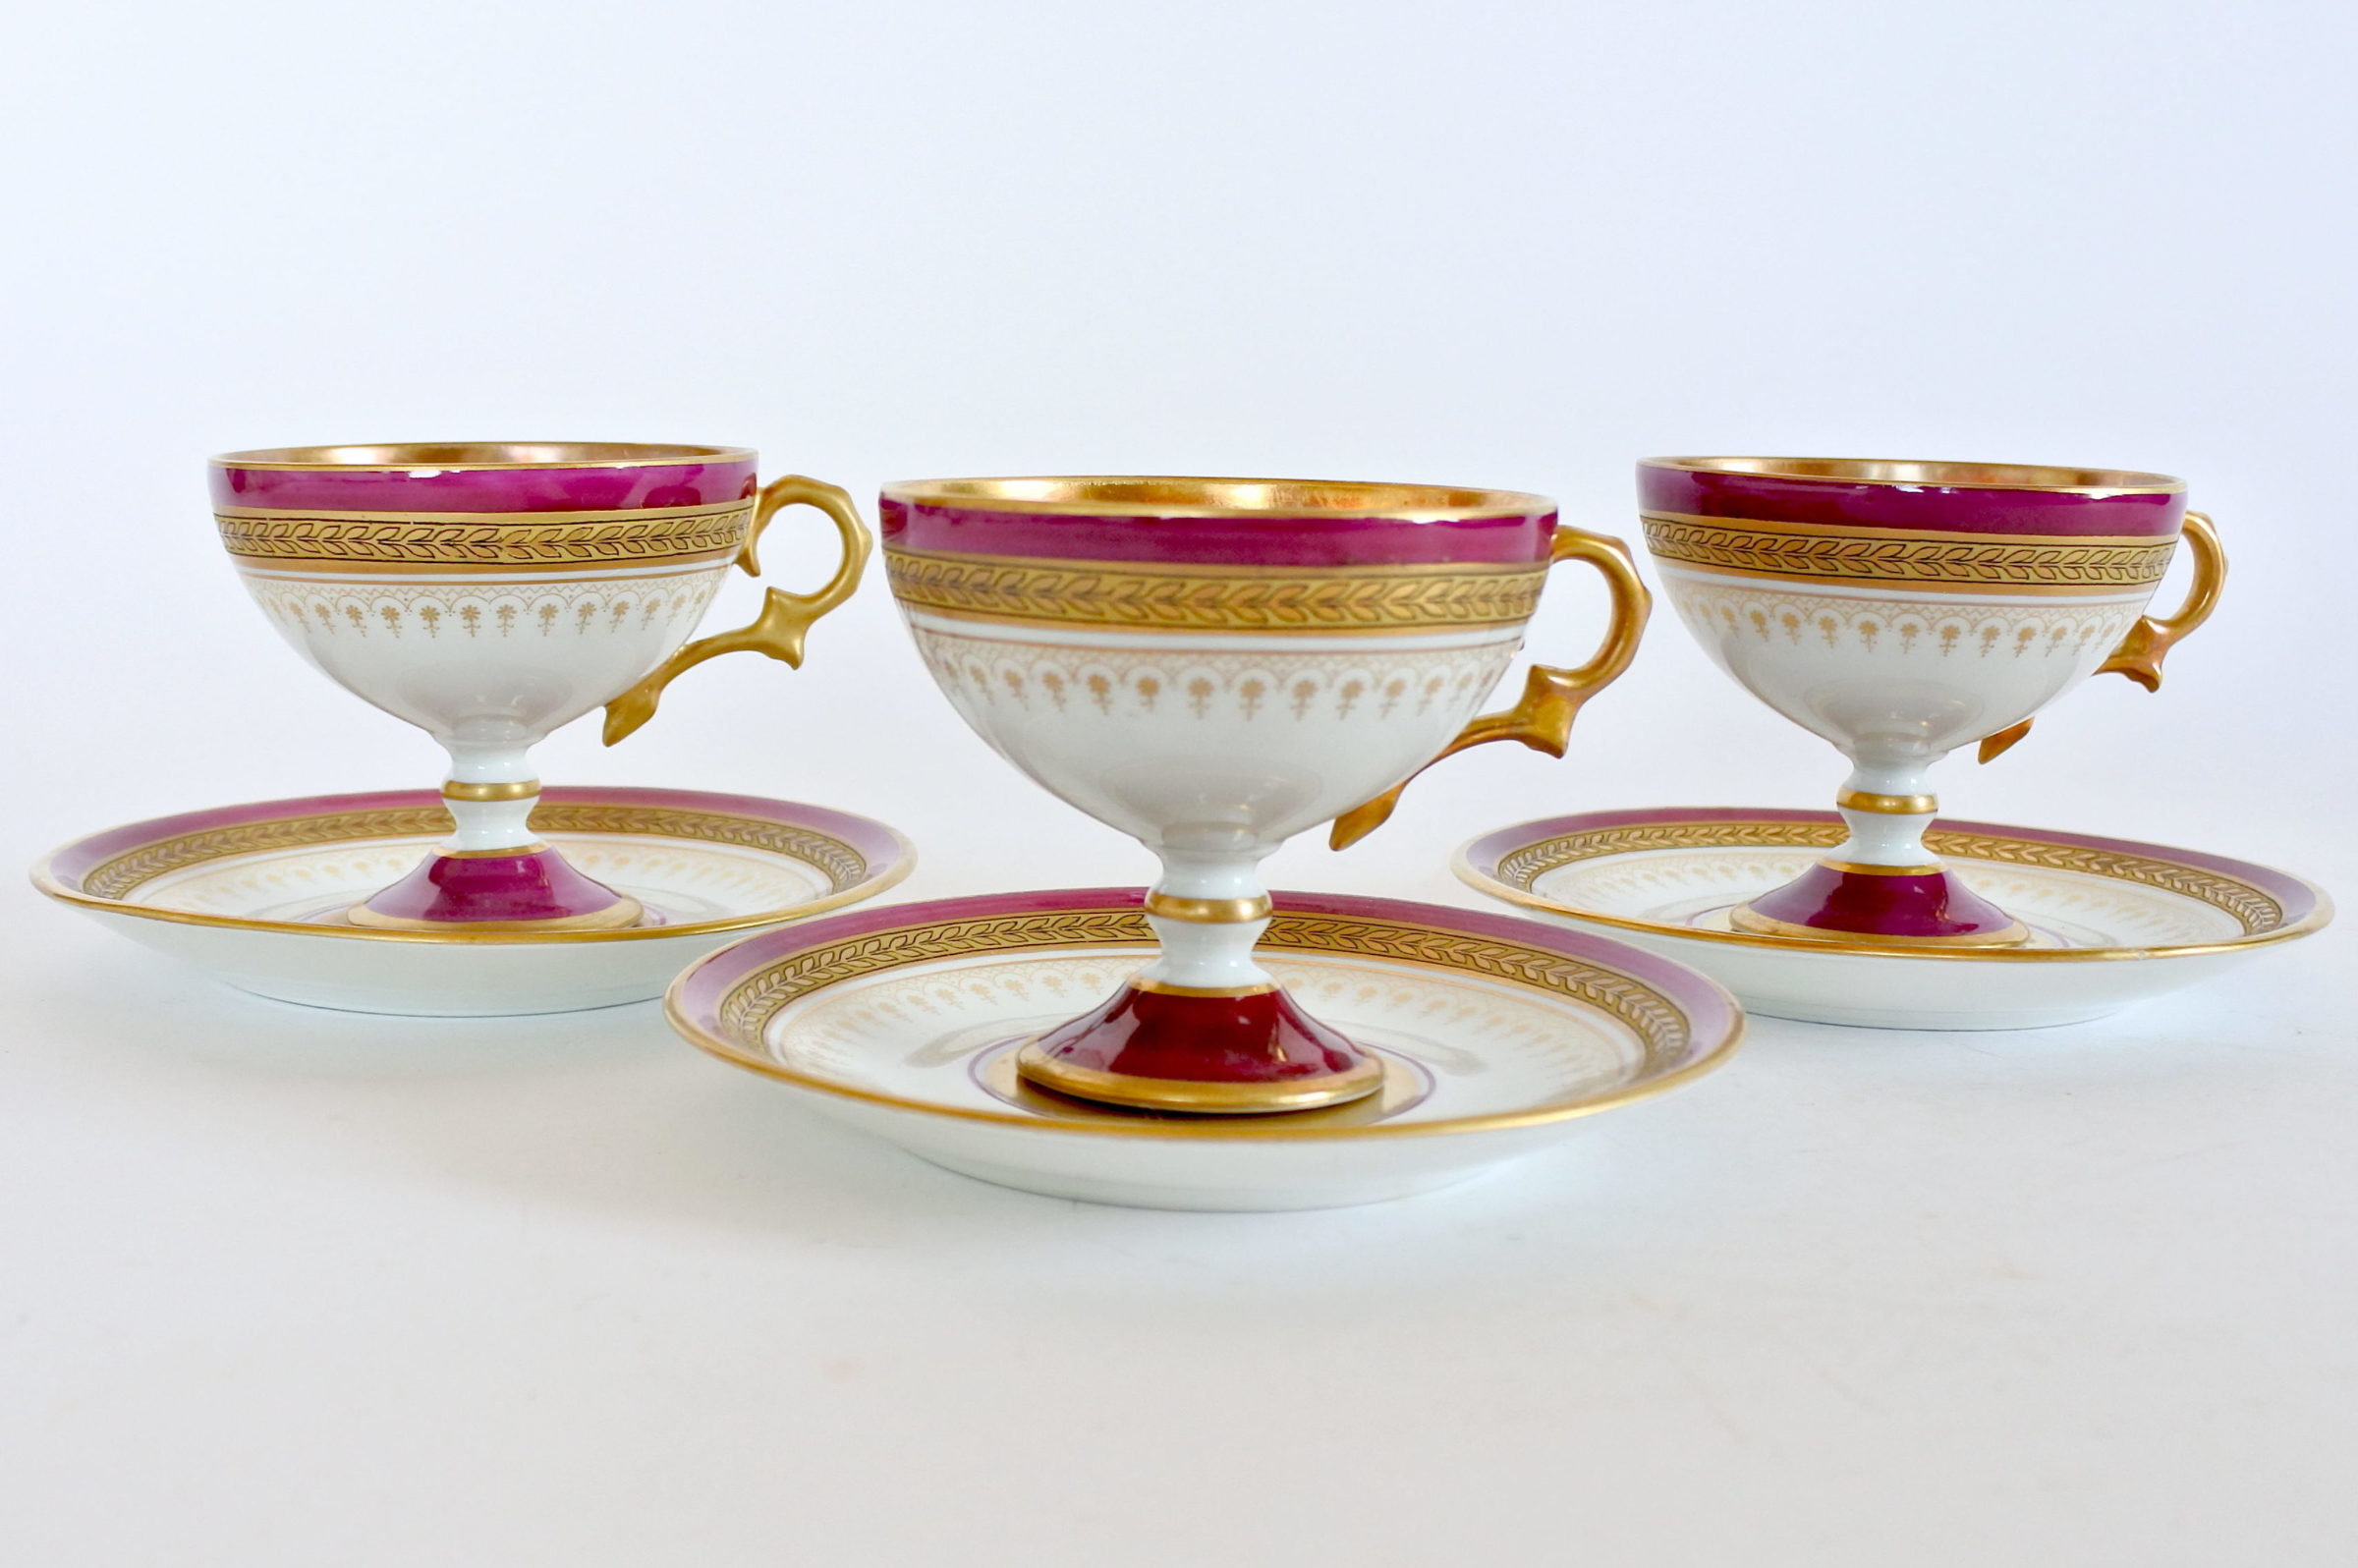 Tazzine in porcellana di Limoges decorate con smalto rosso e greche dorate